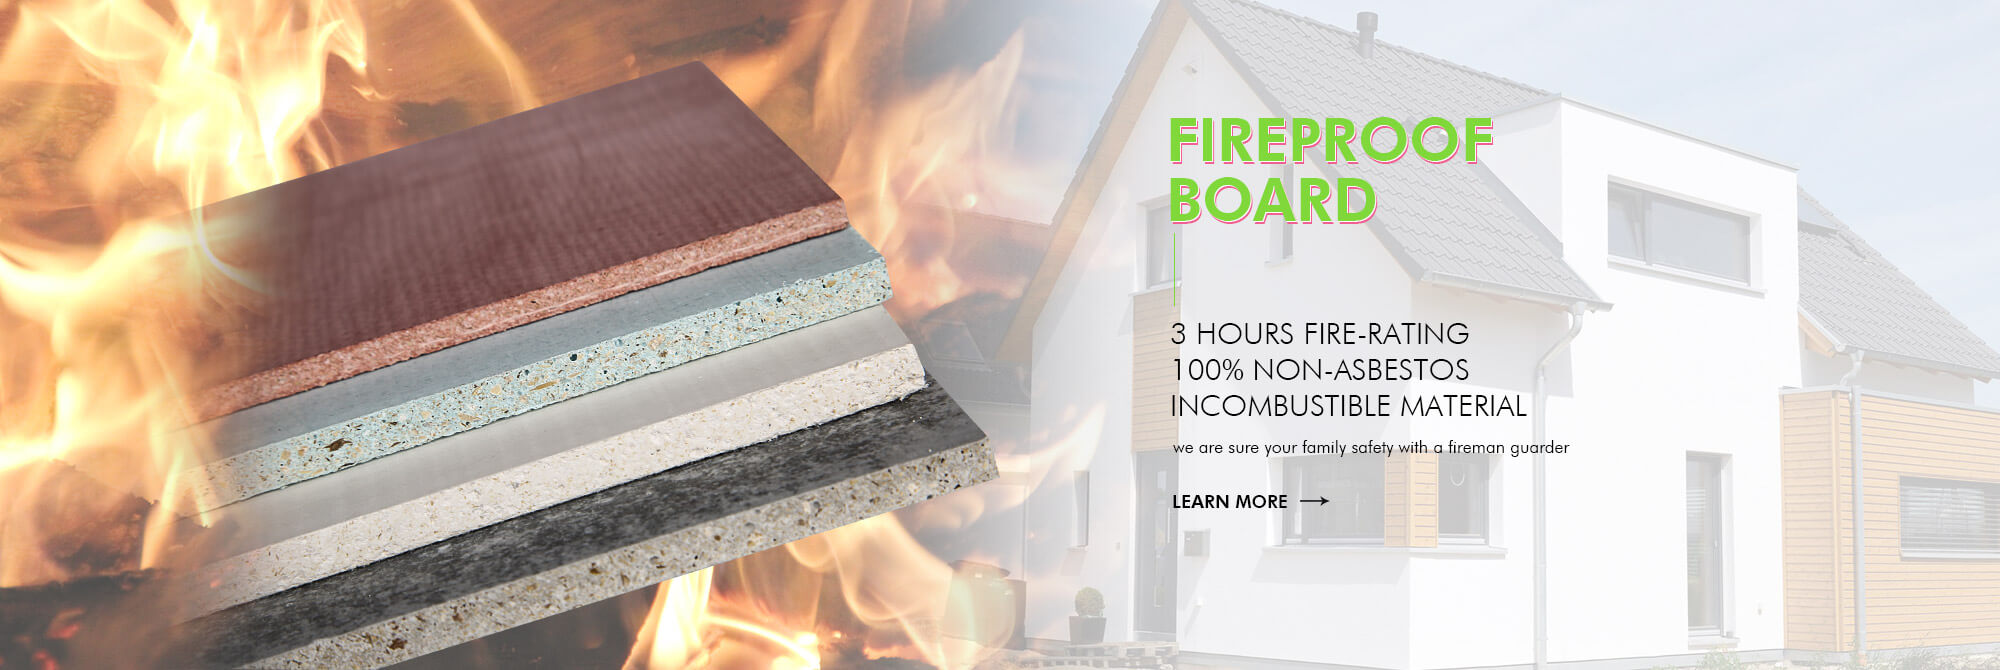 Fireproof board proxy